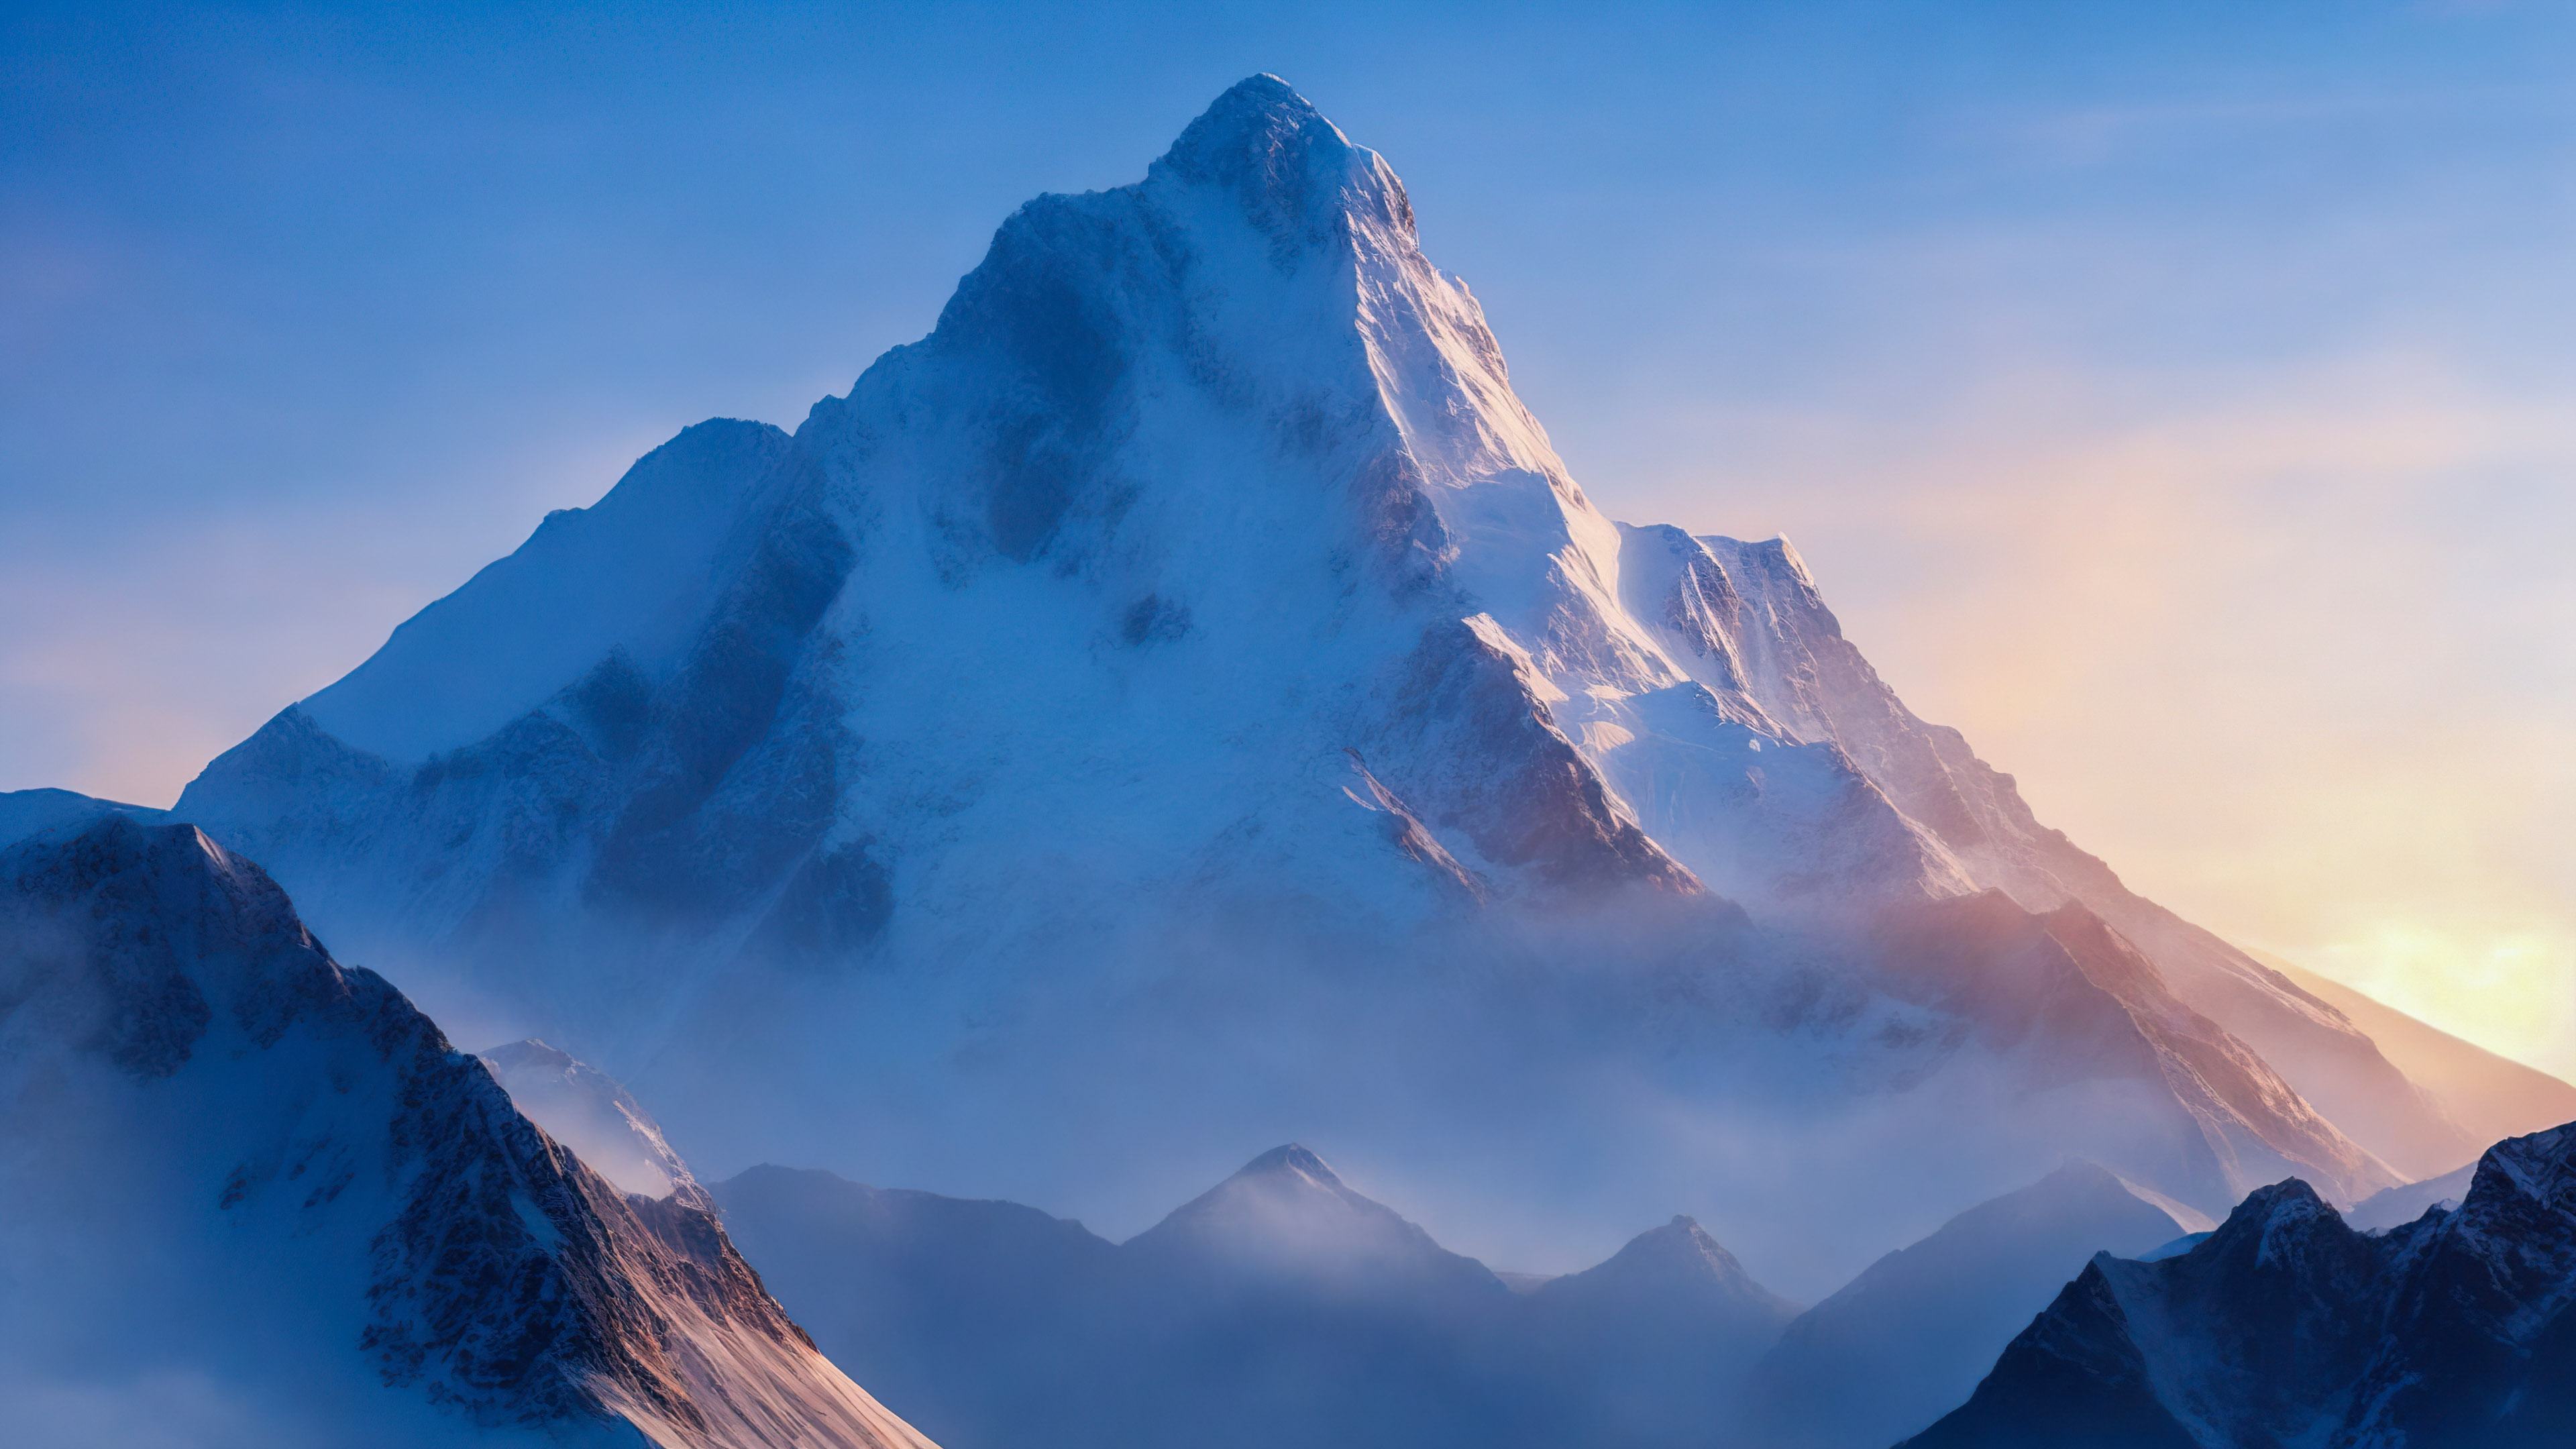 Vivez la grandeur de notre fond d'écran de nature magnifique en 4k, présentant un pittoresque sommet de montagne embrassé par la première lumière de l'aube sous un ciel bleu pâle.